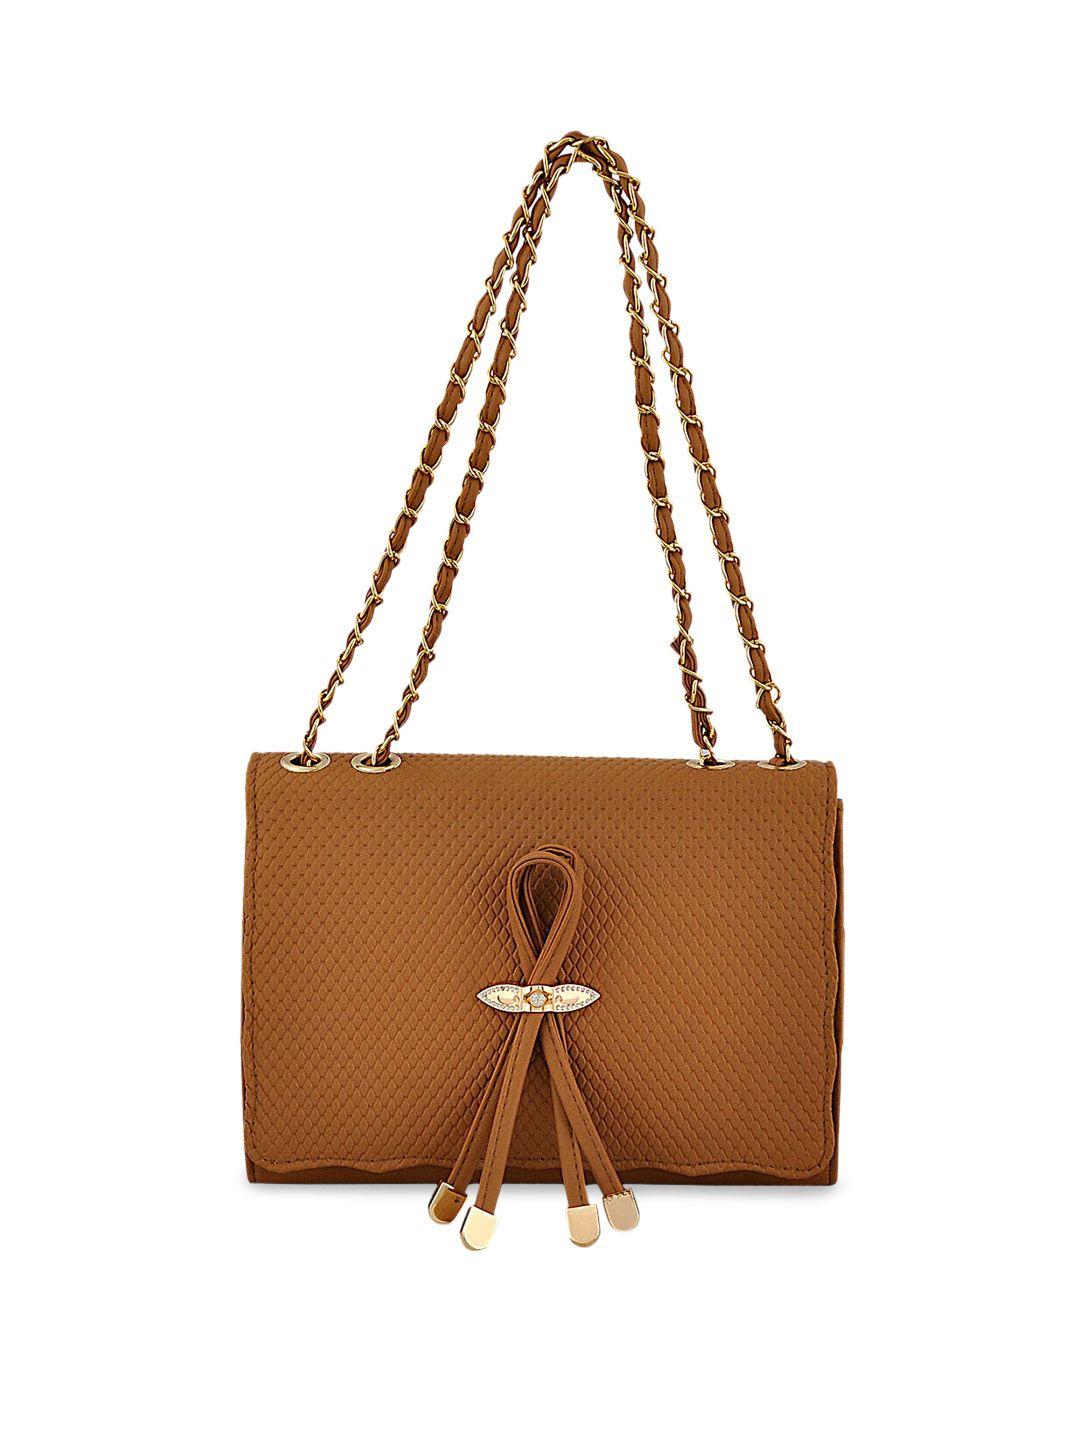 pez dorado brown textured structured shoulder bag